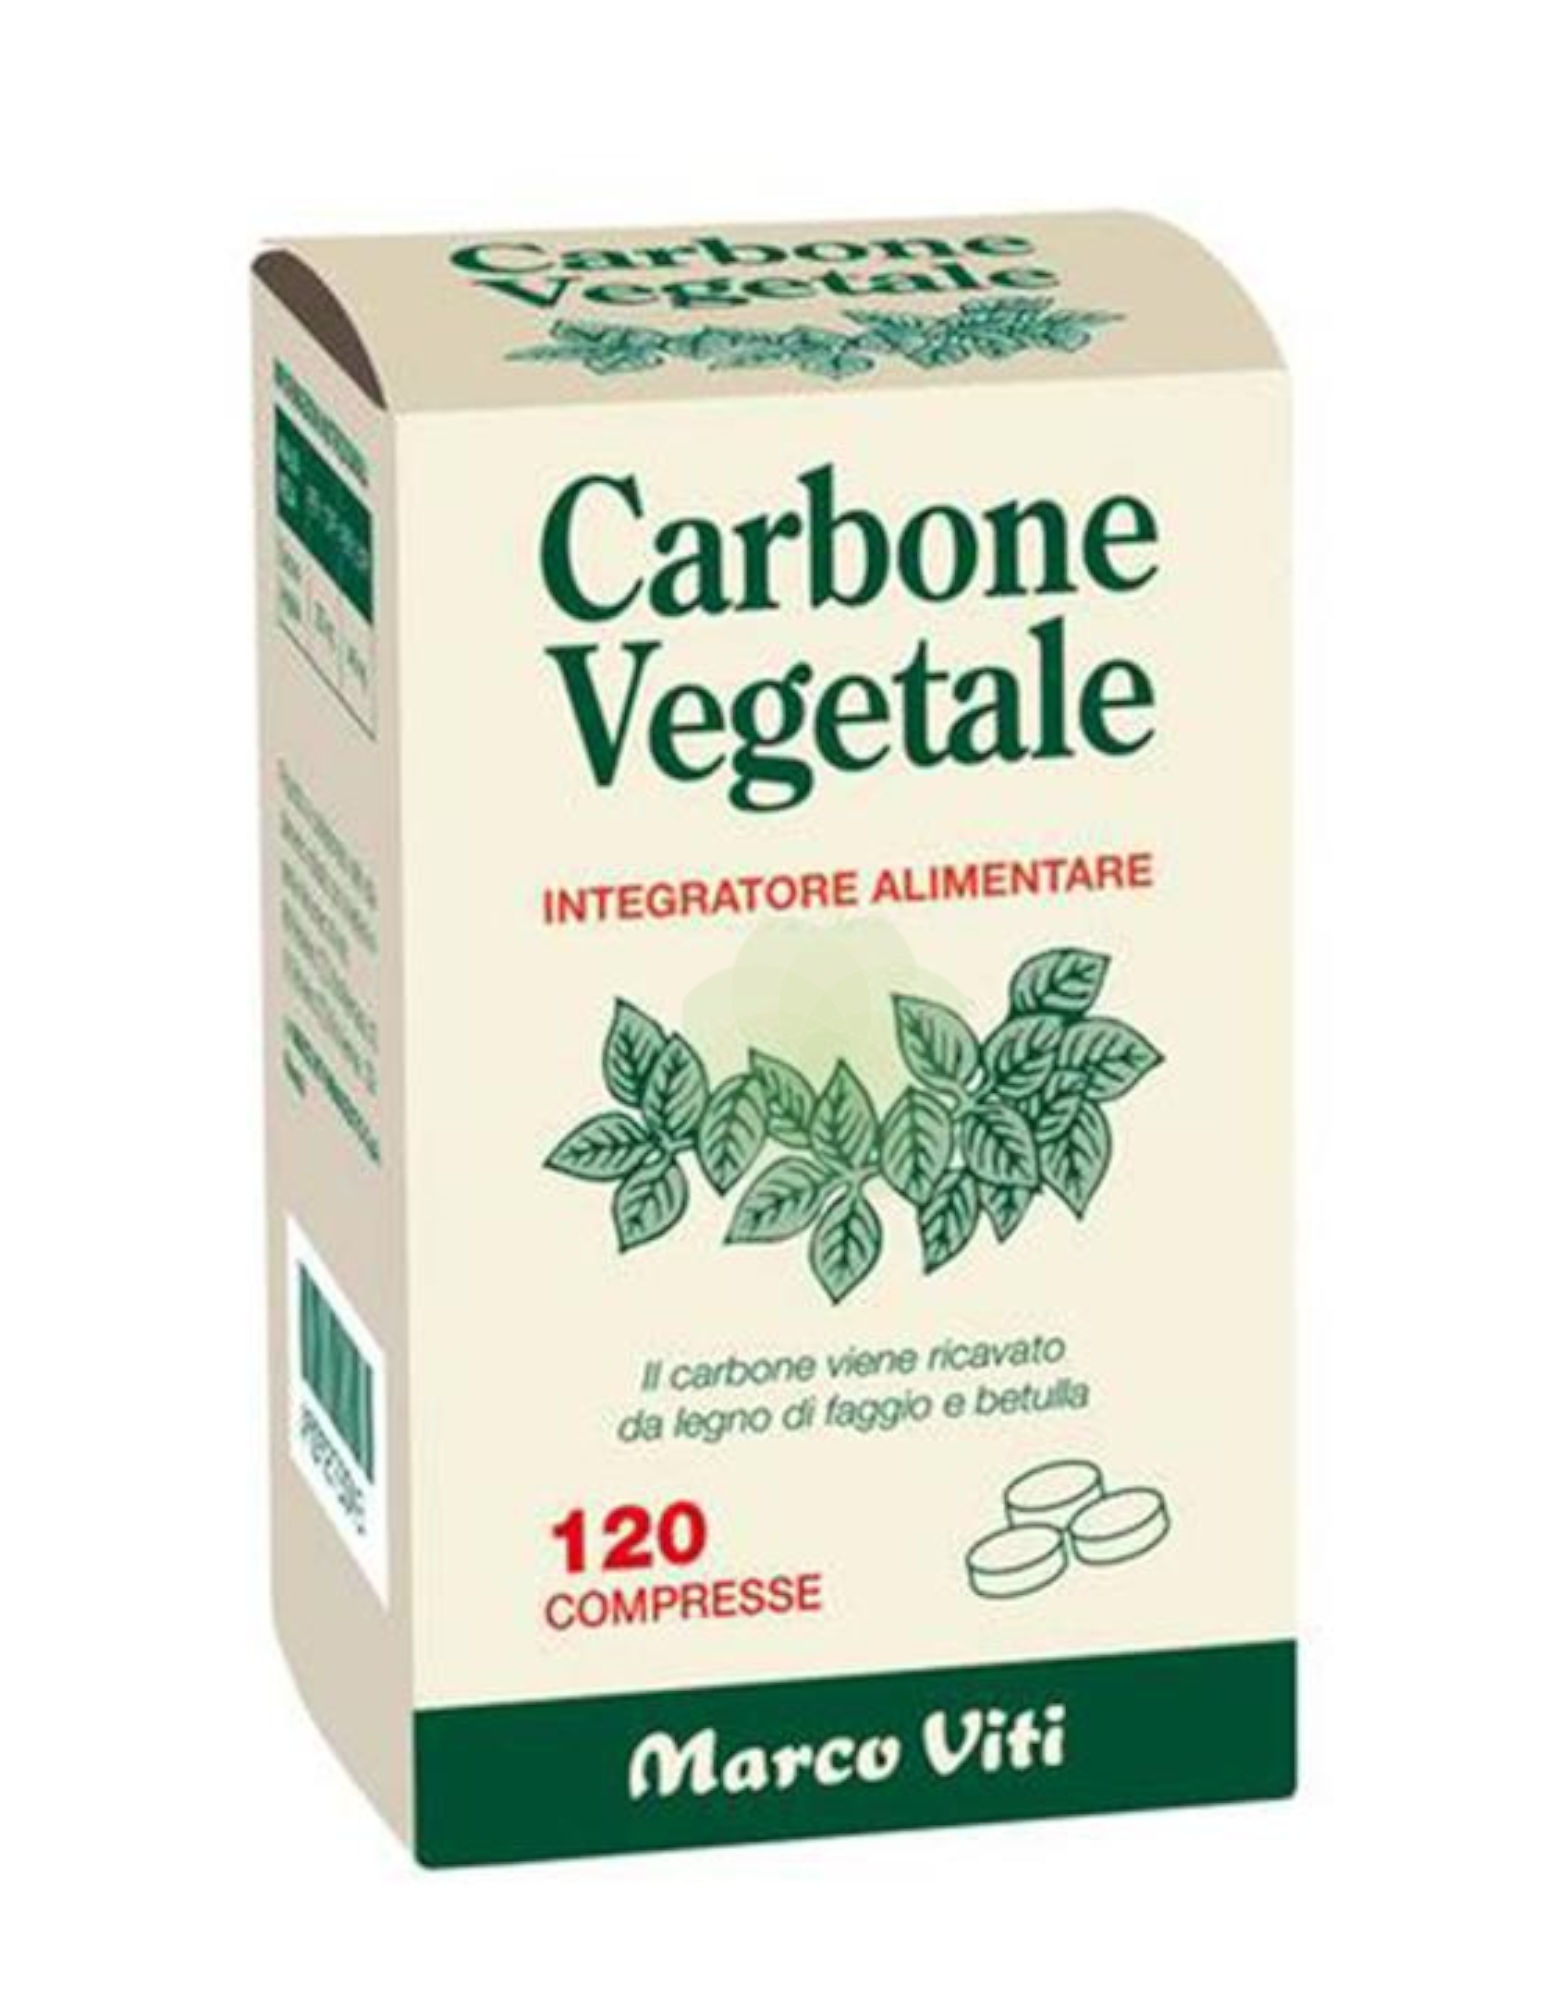 Carbone Vegetale 120 tablets